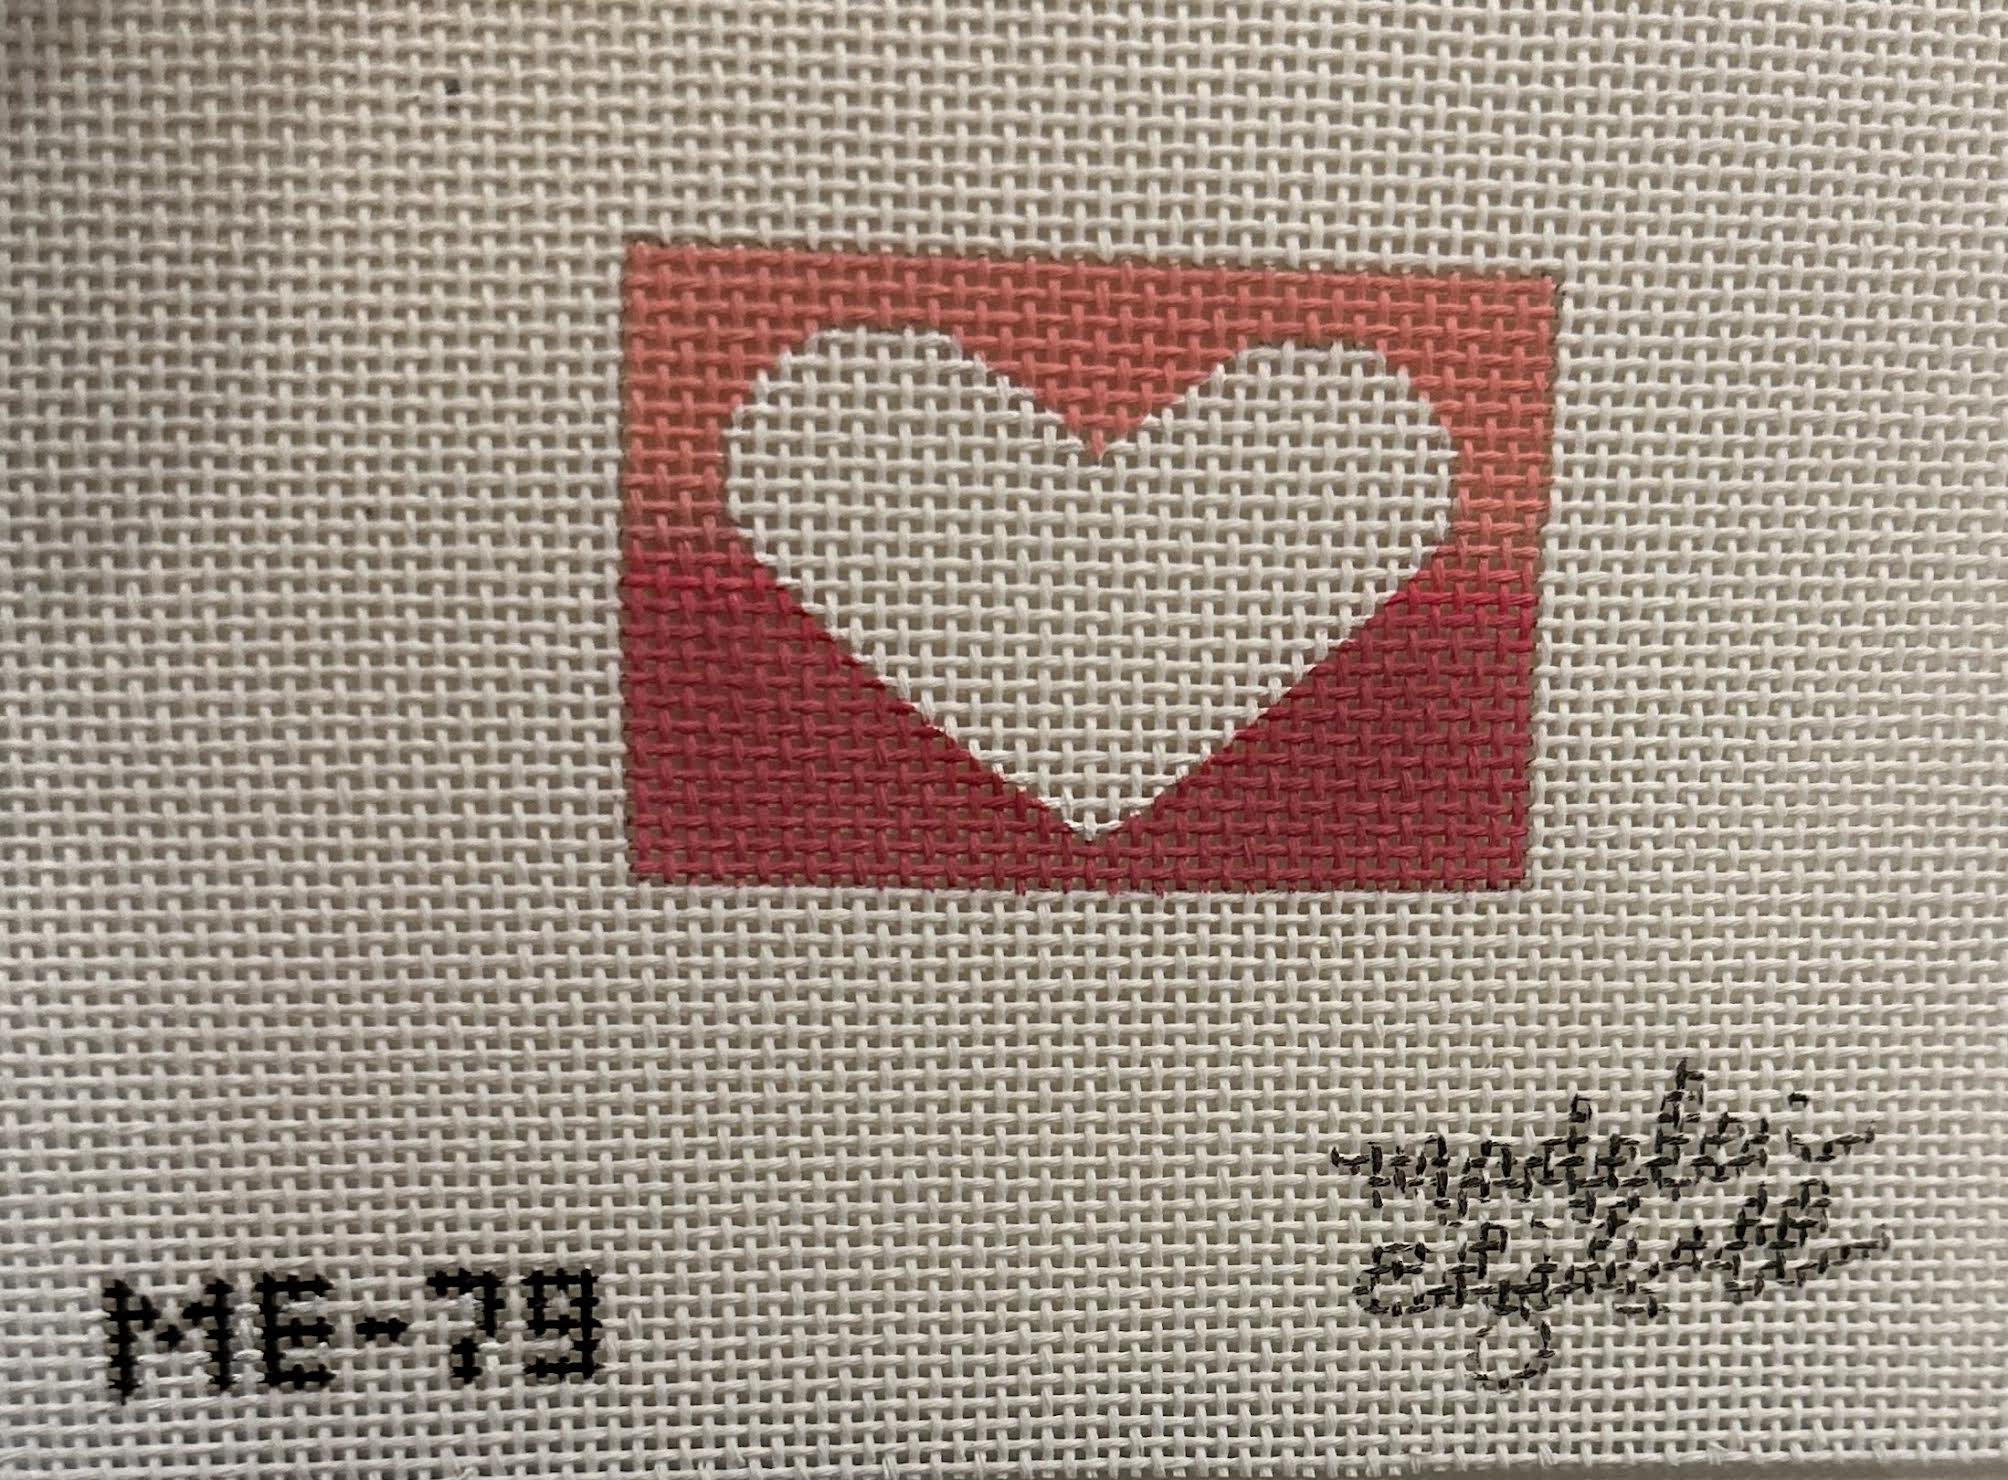 Madeleine Elizabeth ME-79 2x3 Insert Heart